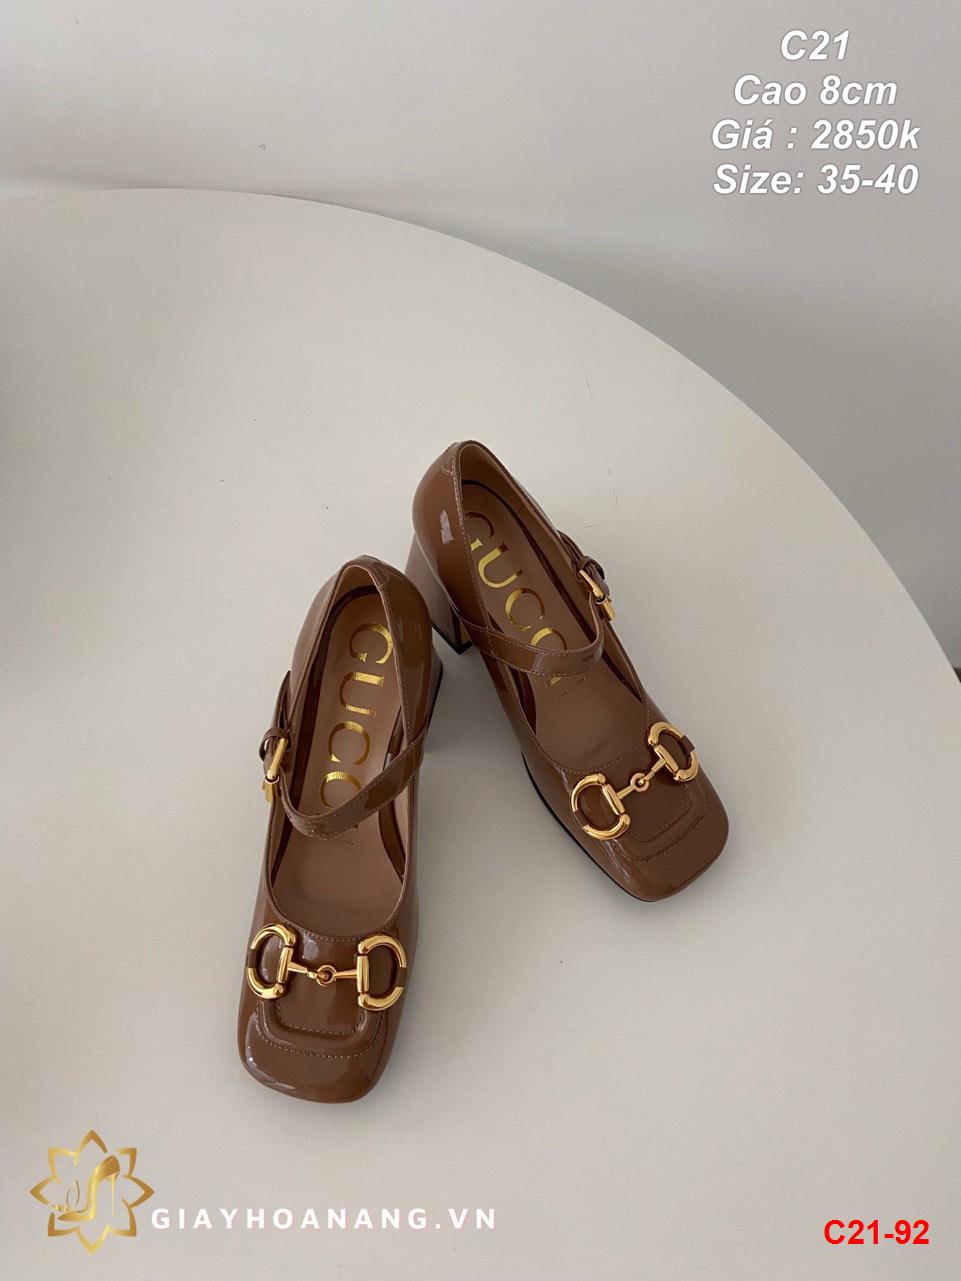 C21-92 Gucci giày cao 8cm siêu cấp